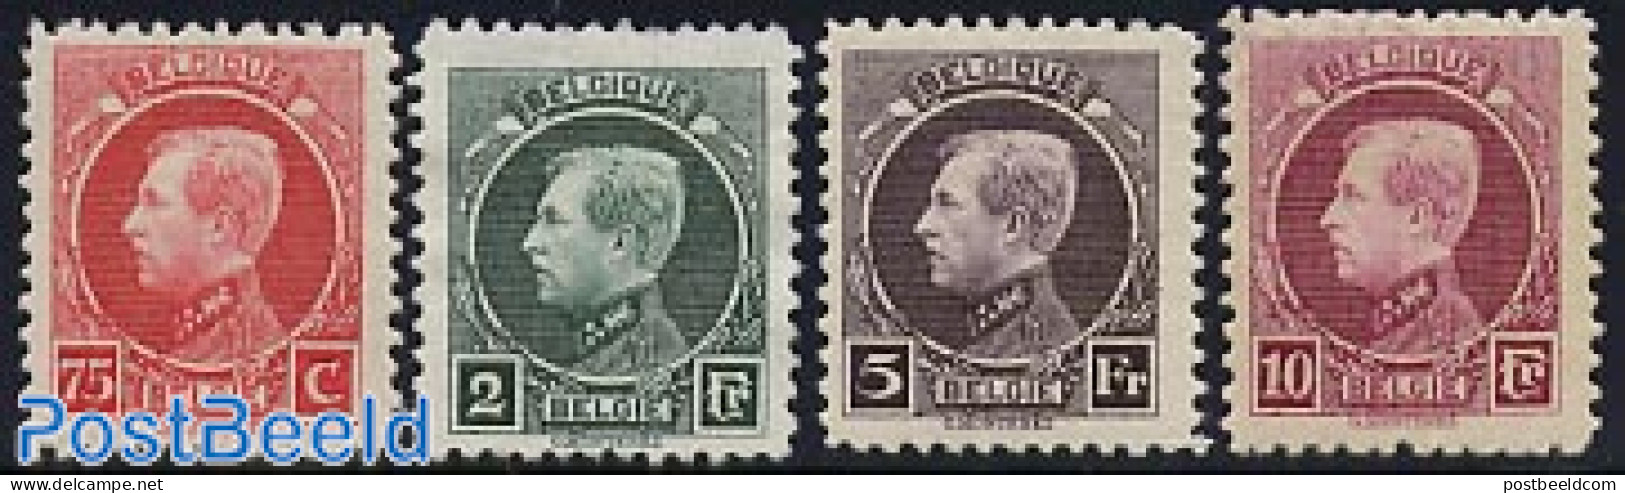 Belgium 1922 Definitives 4v, King Albert I, Mint NH - Unused Stamps